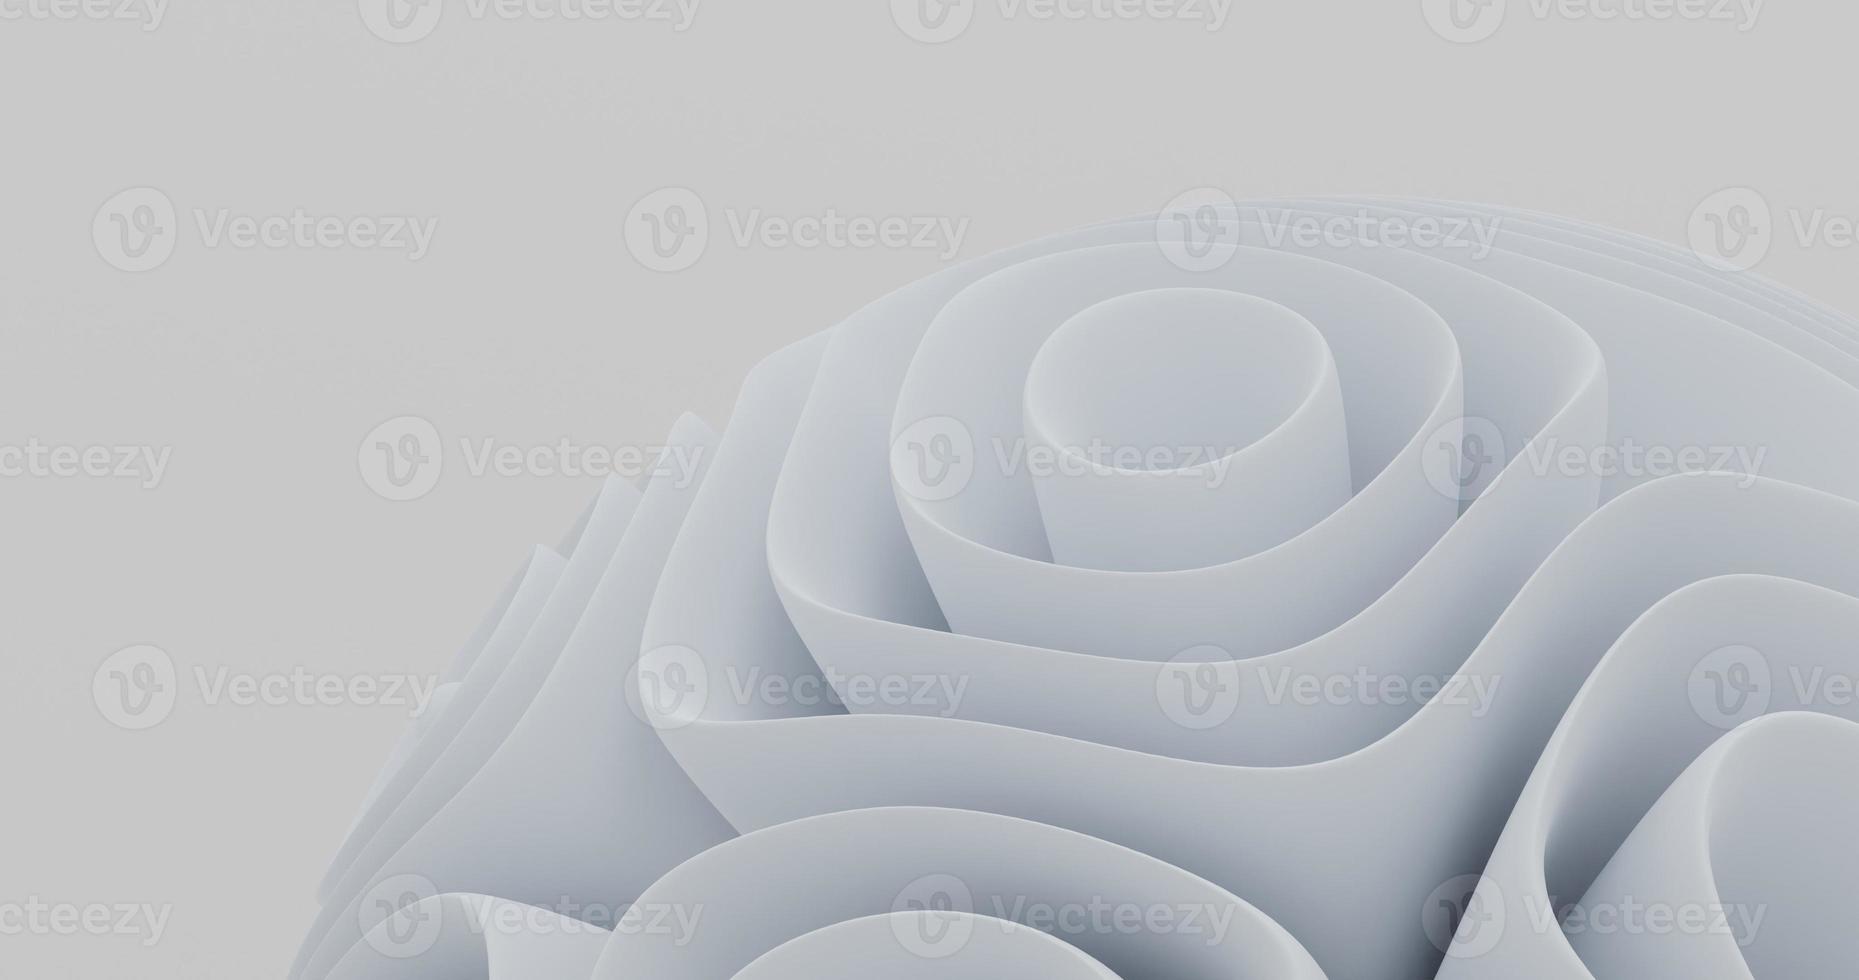 abstracte achtergrond met behulp van het object rechtsonder dat een lichtgrijs bloemachtig vouwpatroon, 3D-rendering en 4k-formaat gebruikt foto